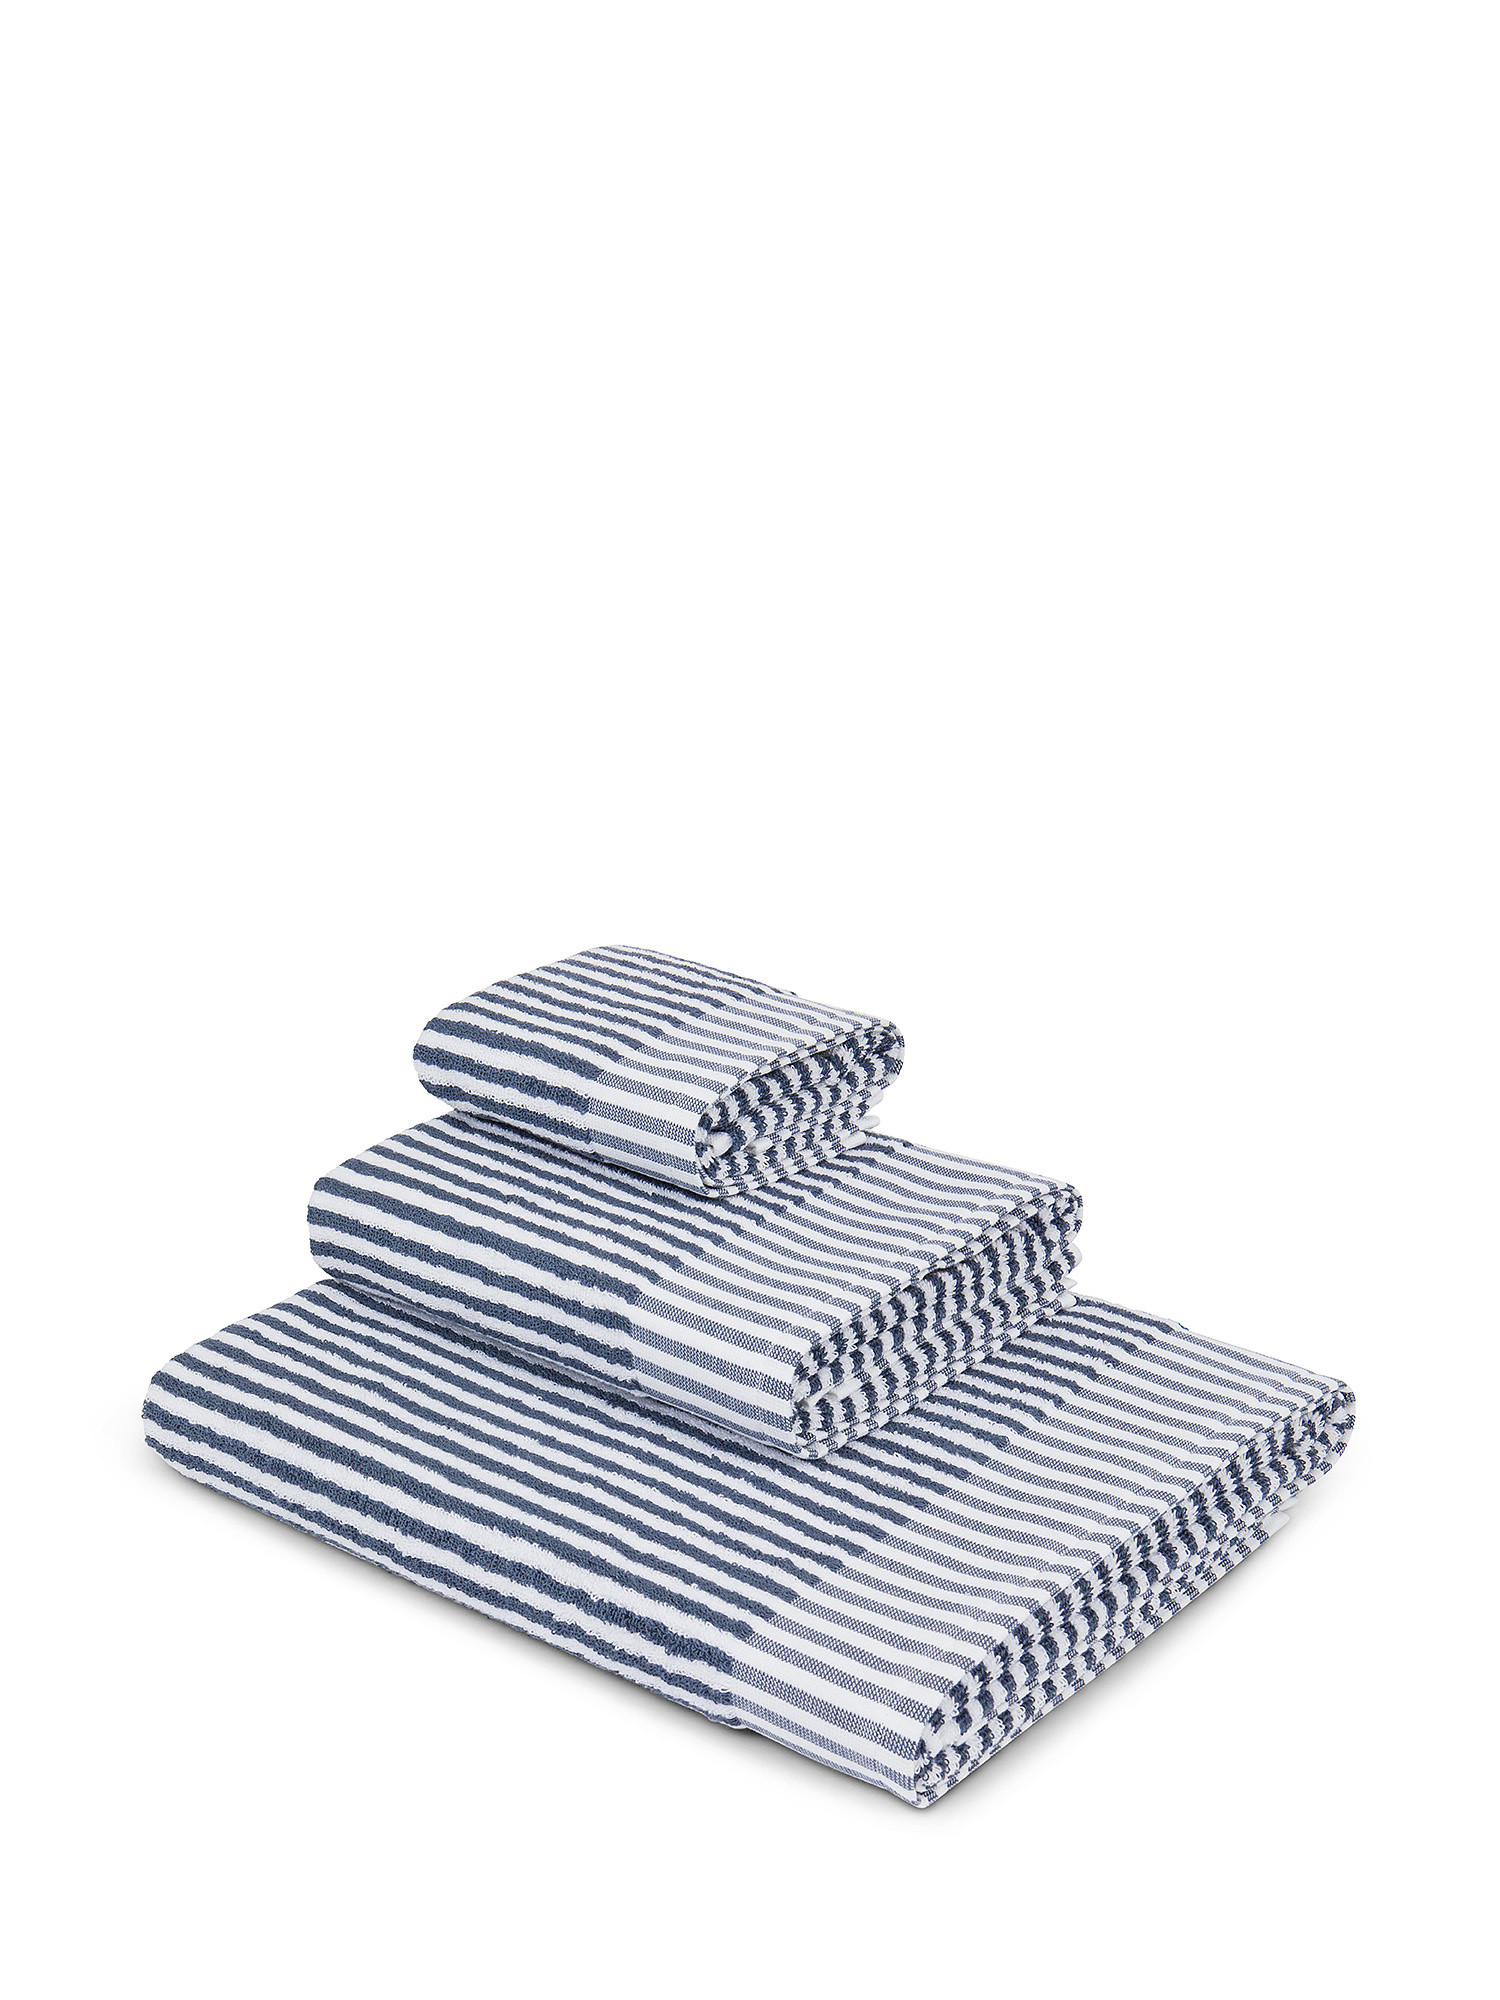 Asciugamano in spugna  di puro cotone., Blu, large image number 0